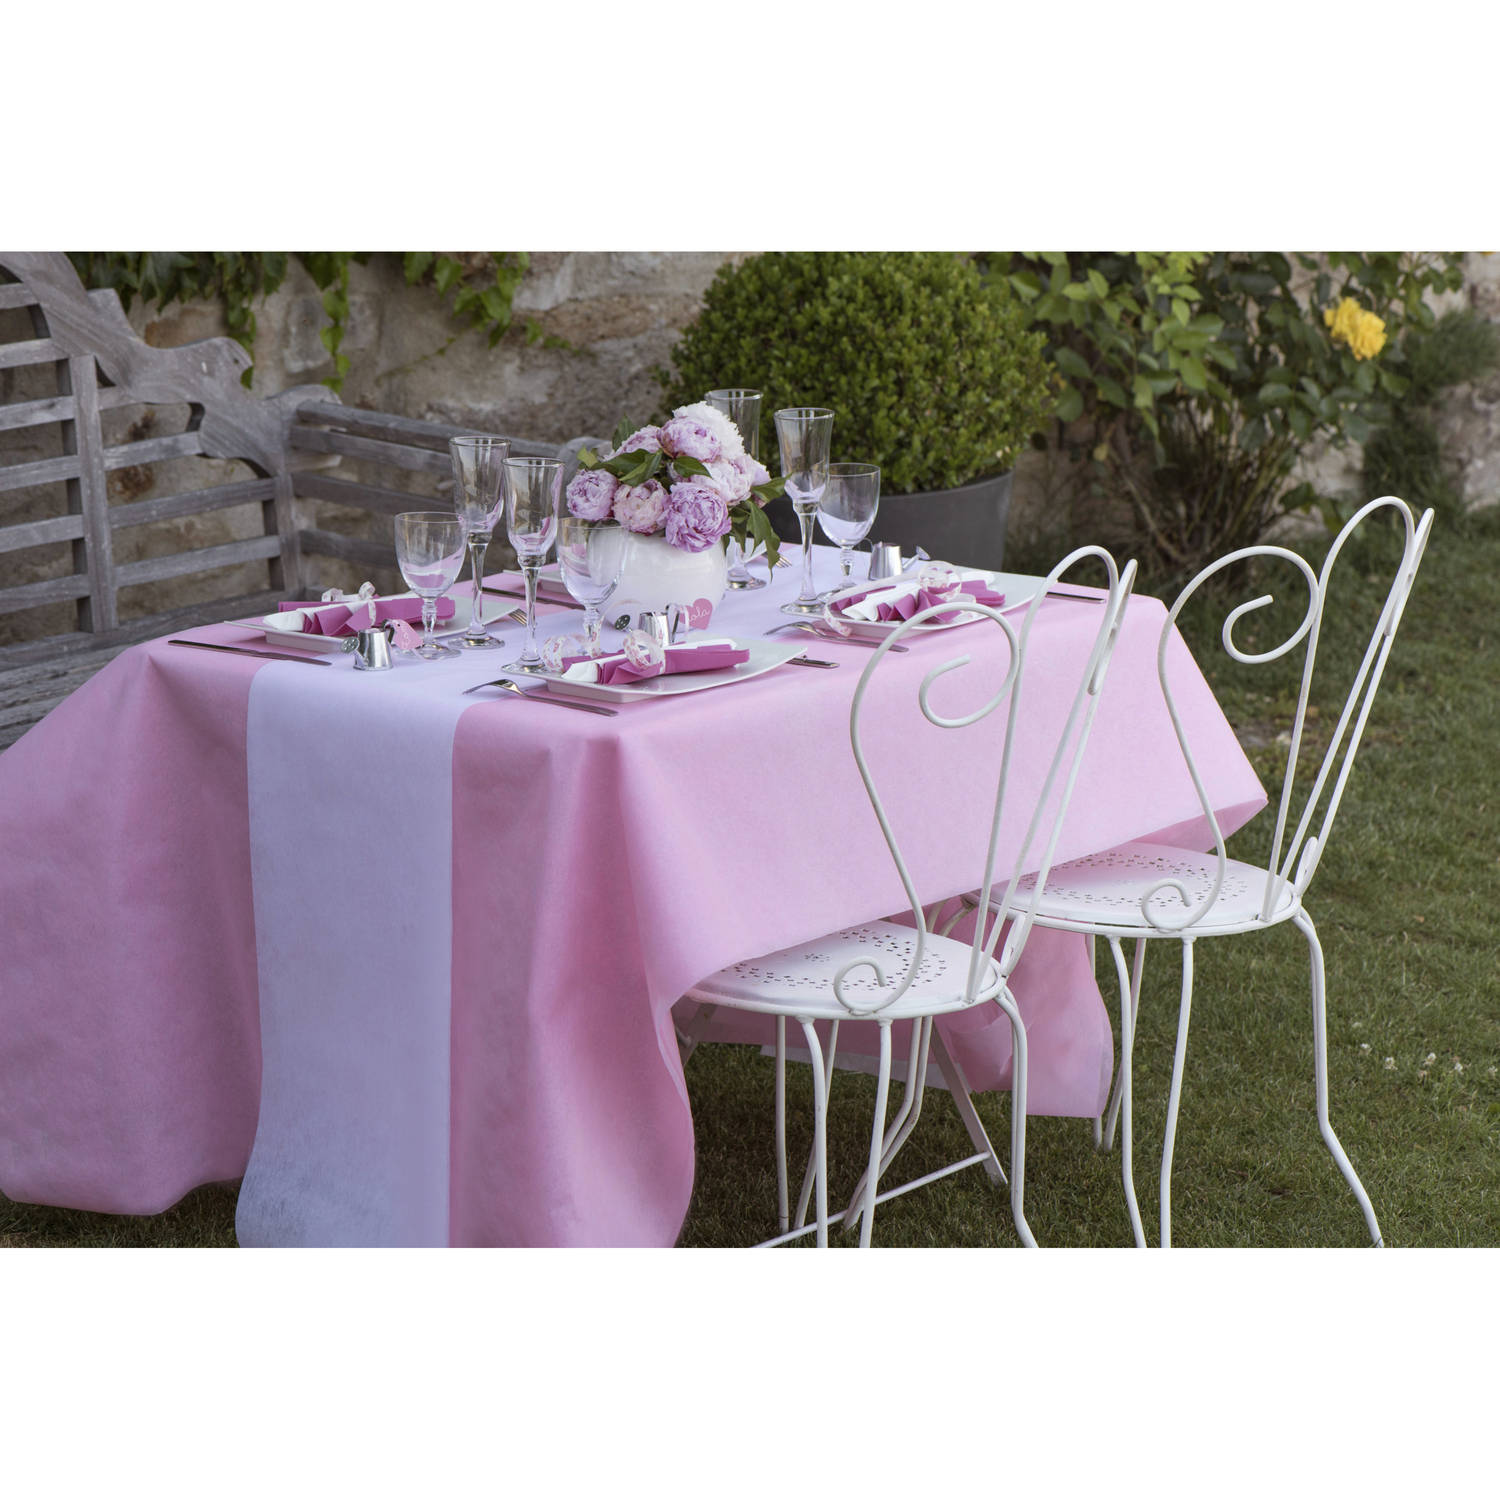 Manoeuvreren timmerman analogie Feest tafelkleed met tafelloper - op rol - roze/wit - 10 meter -  Feesttafelkleden | Blokker